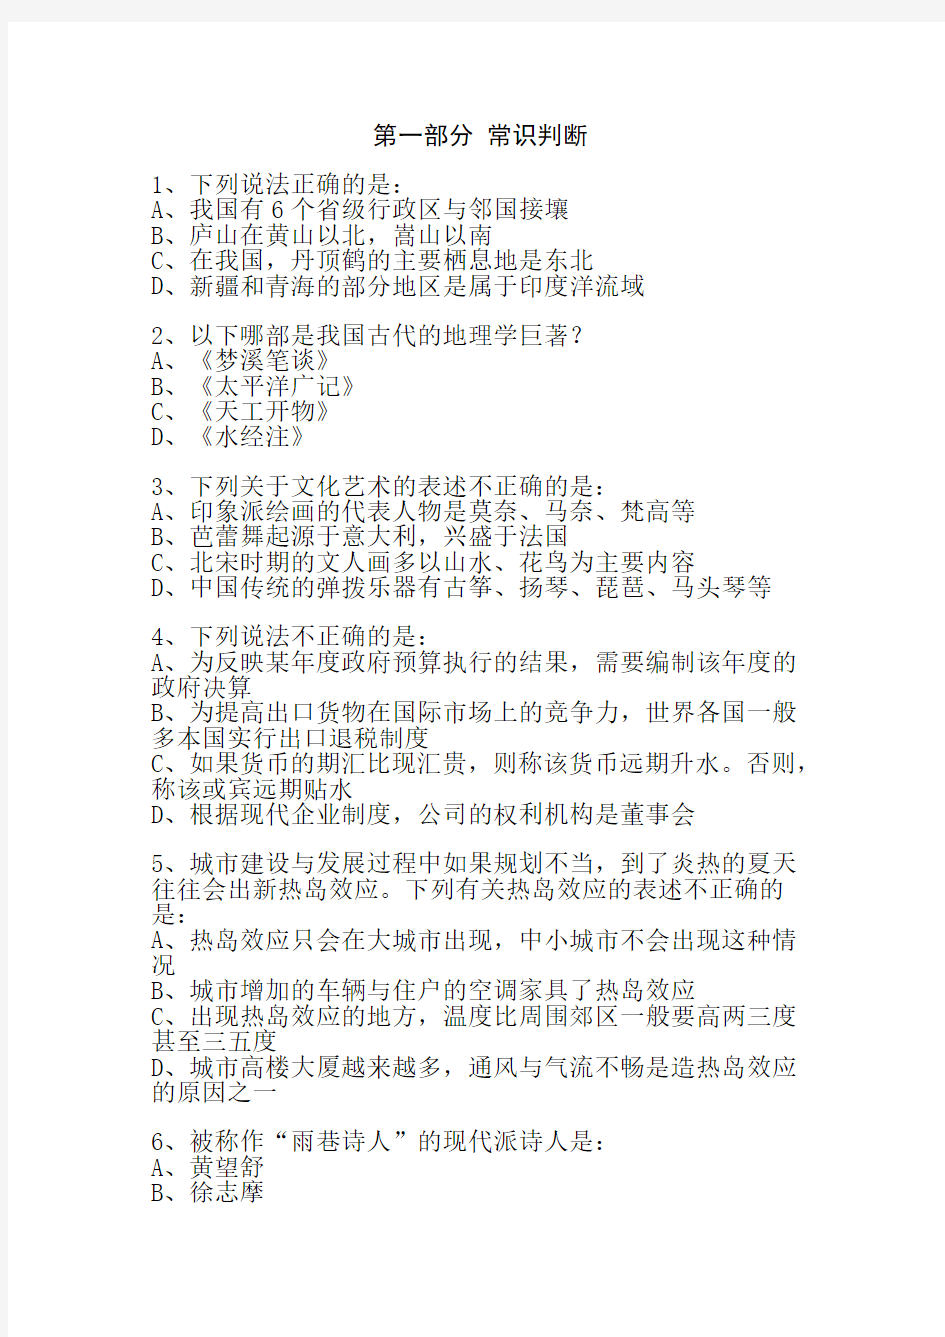 2011年湖南省公务员考试行测真题及答案详解(4.24联考)